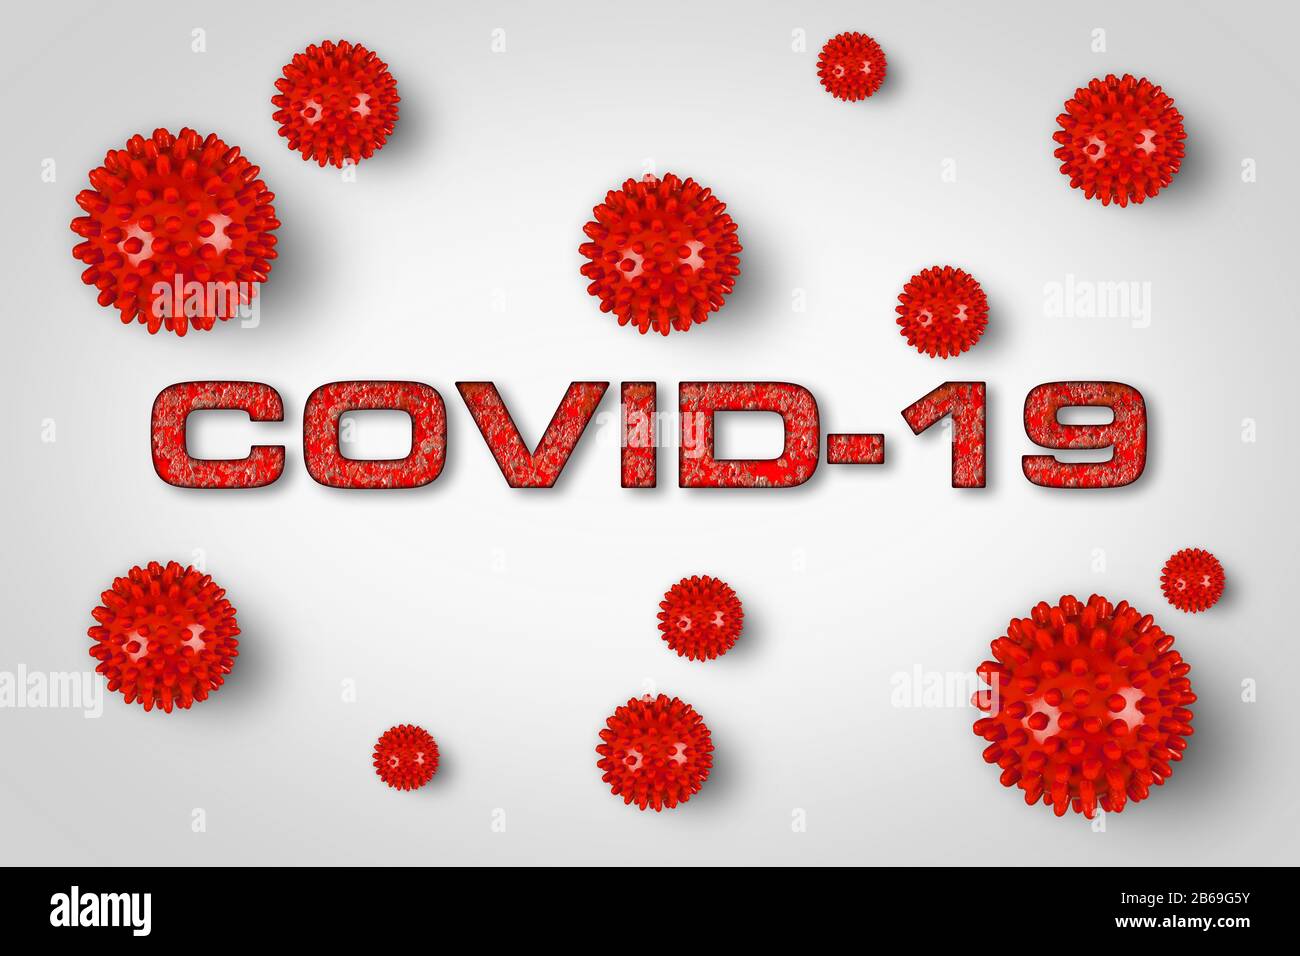 Covid-19 roter Schriftzug mit Corona-Virus auf hellem hellgrauem Hintergrund. Cornavirus globales Konzept für pandemische Epidemieepidemien. Stockfoto